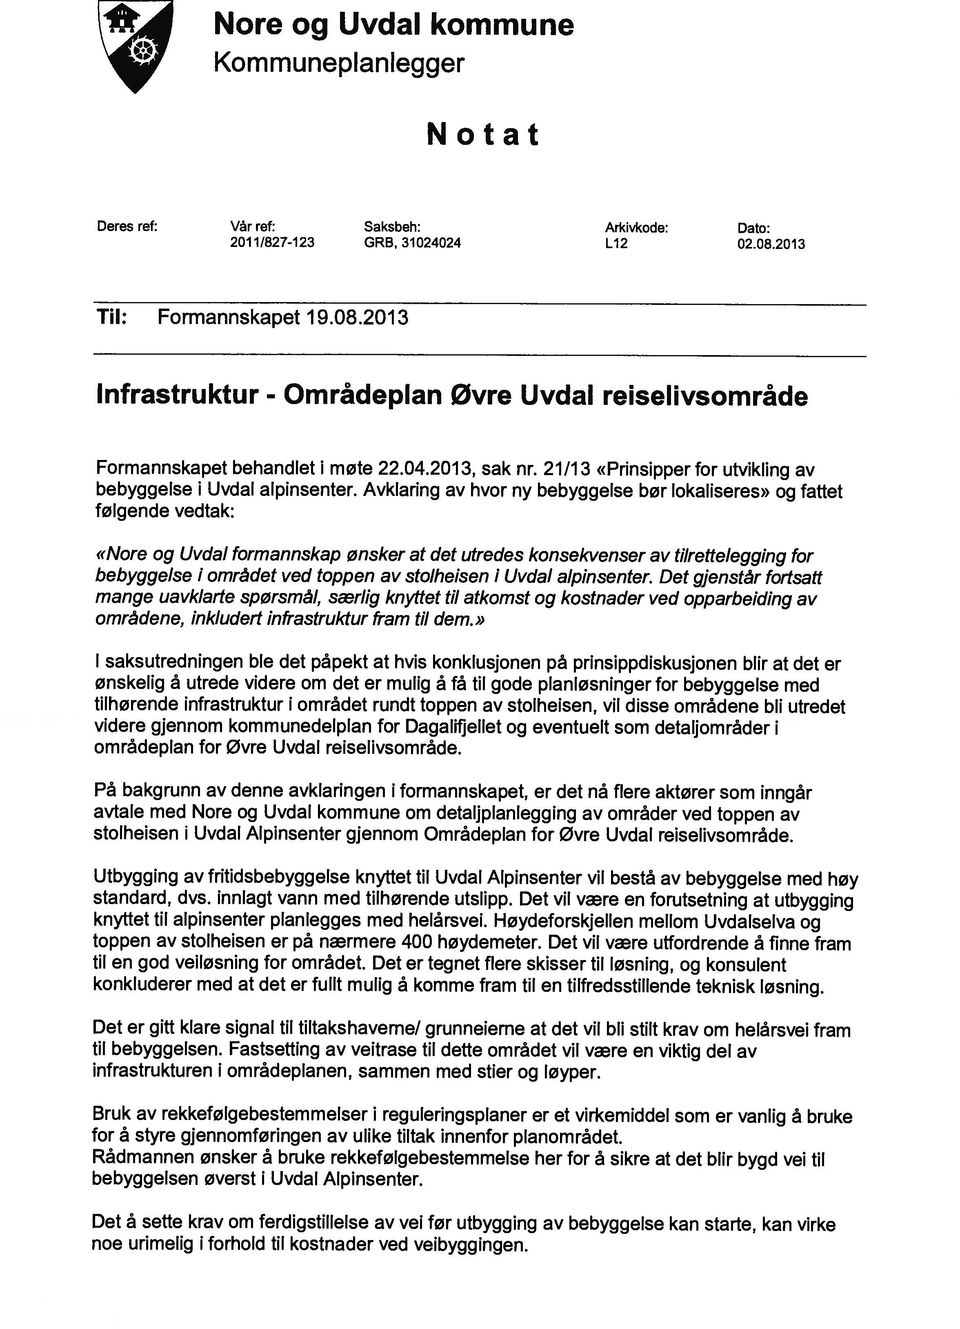 21/13 «Prinsipper for utvikling av bebyggelse i Uvdal alpinsenter.